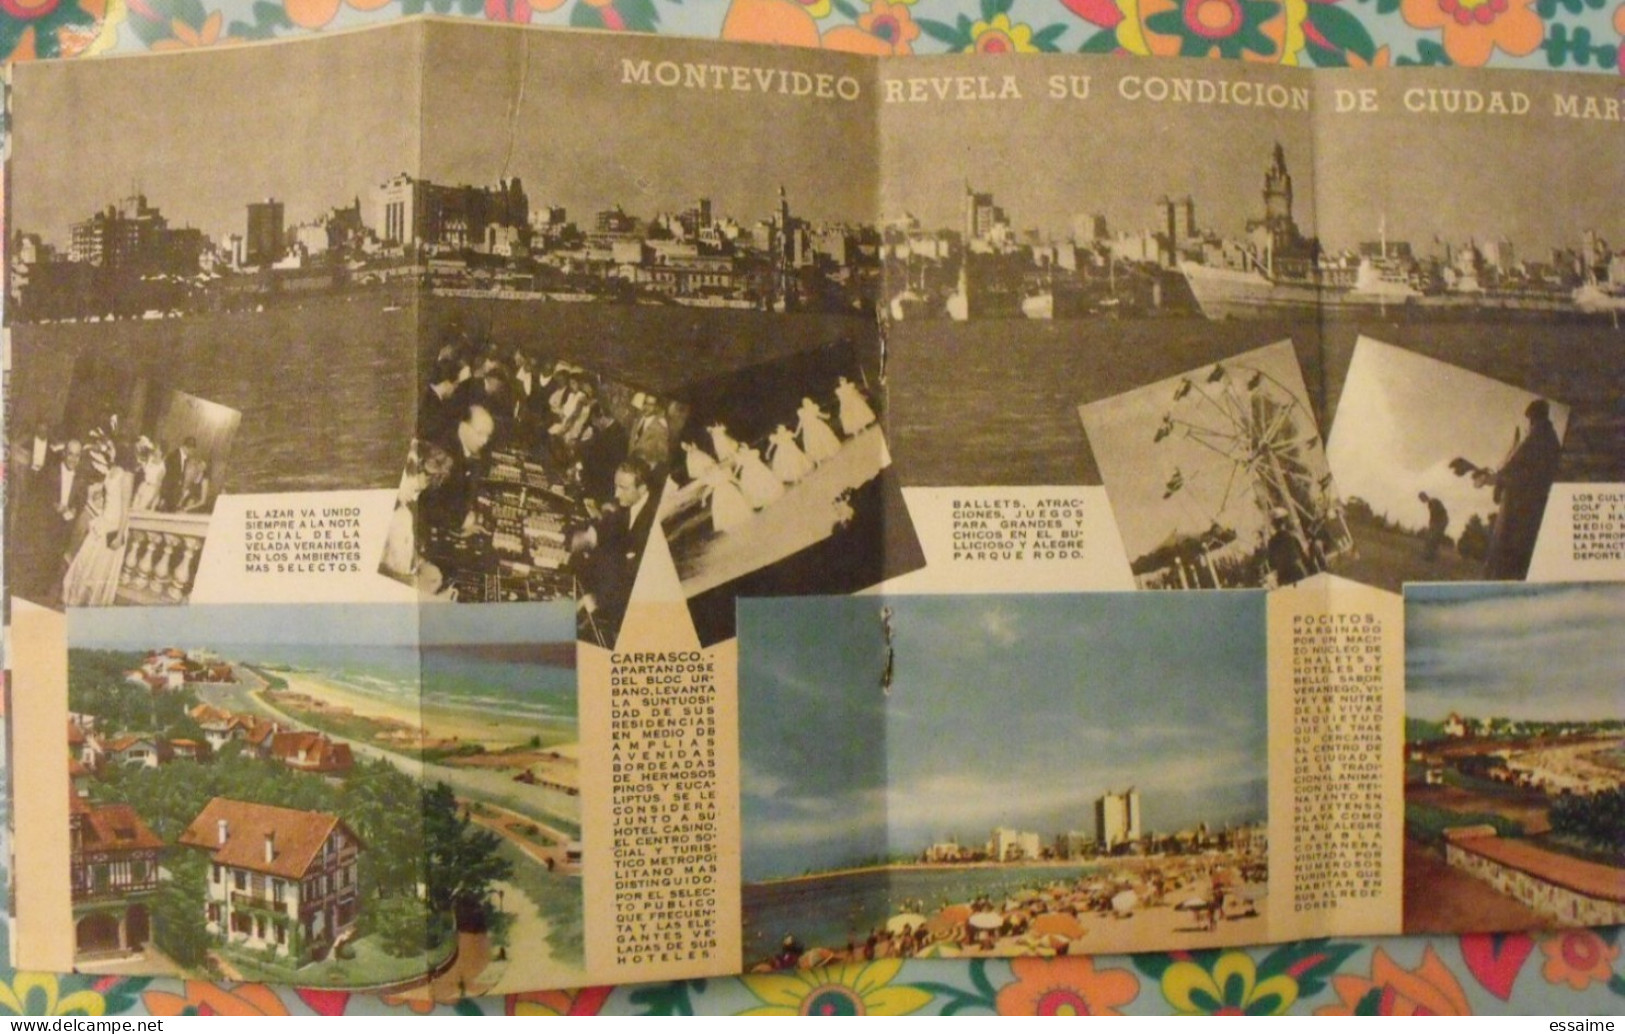 Uruguay. Plan Touristique. Montevideo.  Carte Dépliant Tourisme 1948 - Unclassified